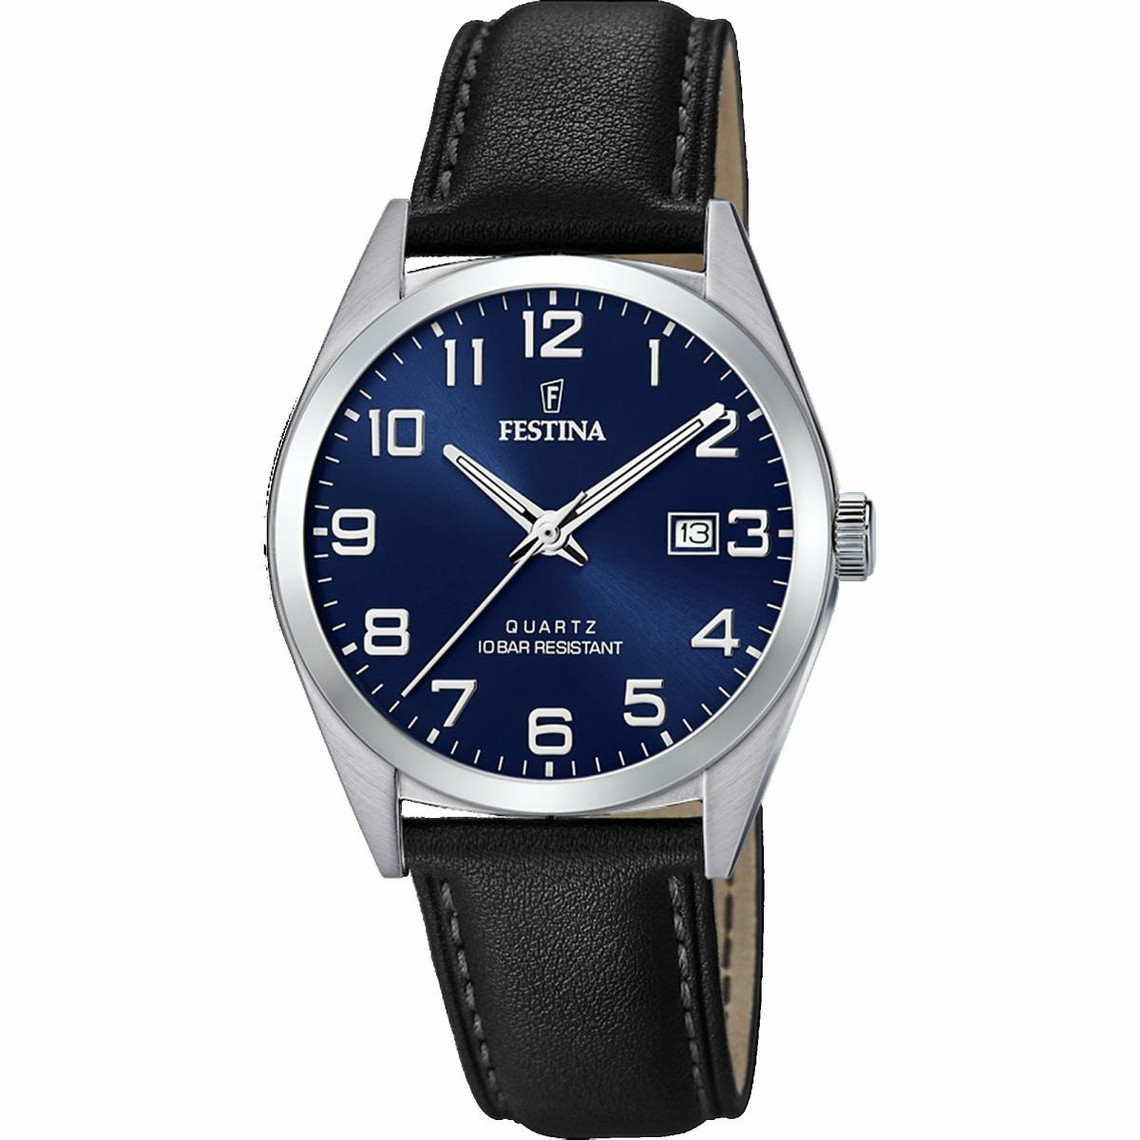 montre festina f20446-2 - classique dateur boîtier acier argenté bracelet cuir noir cadran bleu homme